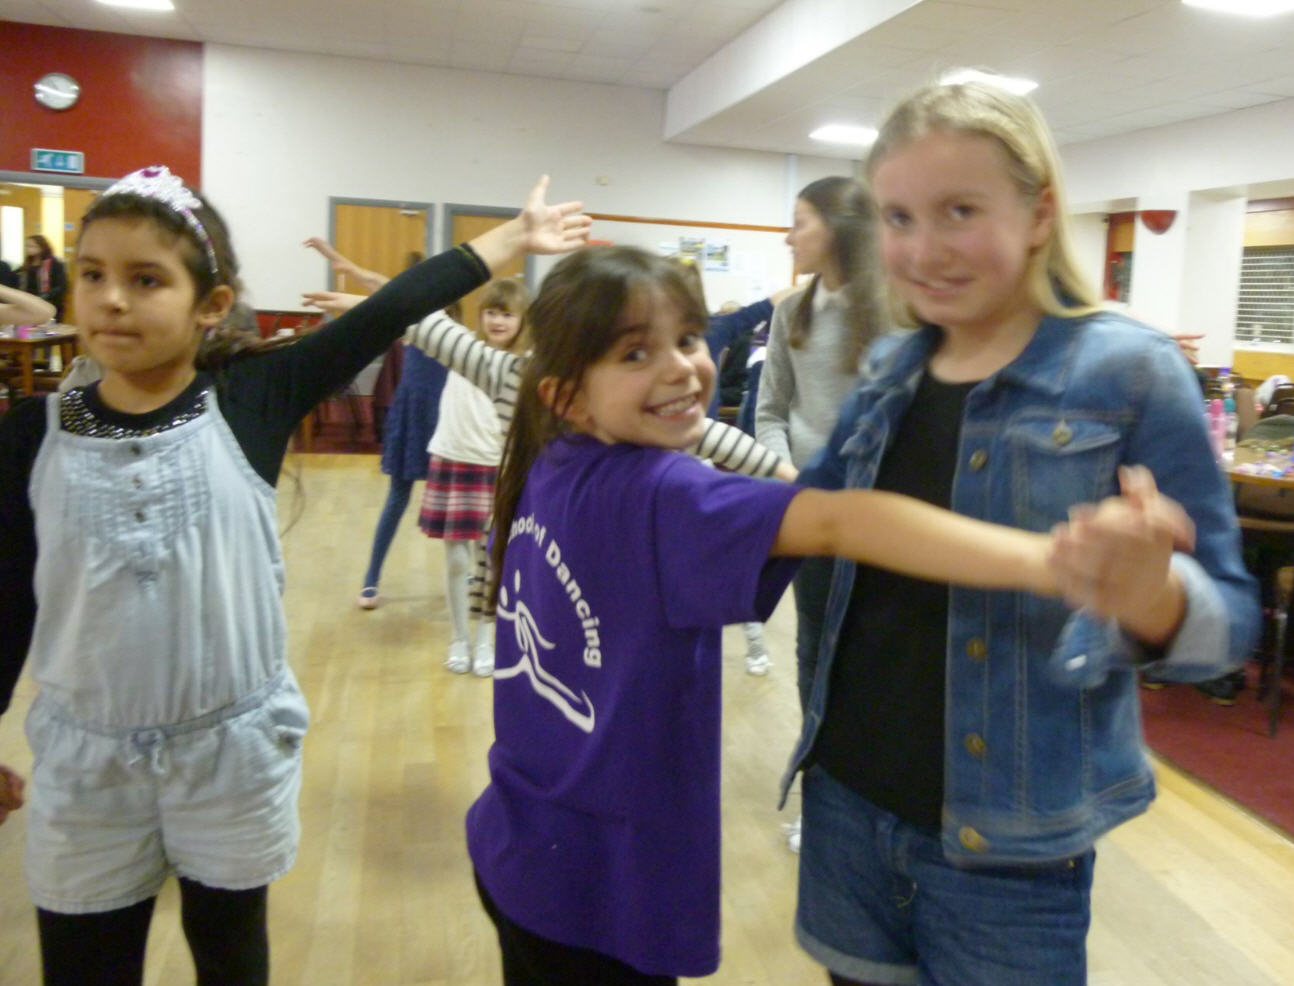 Children’s Dance Class Peterborough Feb 2016 | Nene School of Dancing